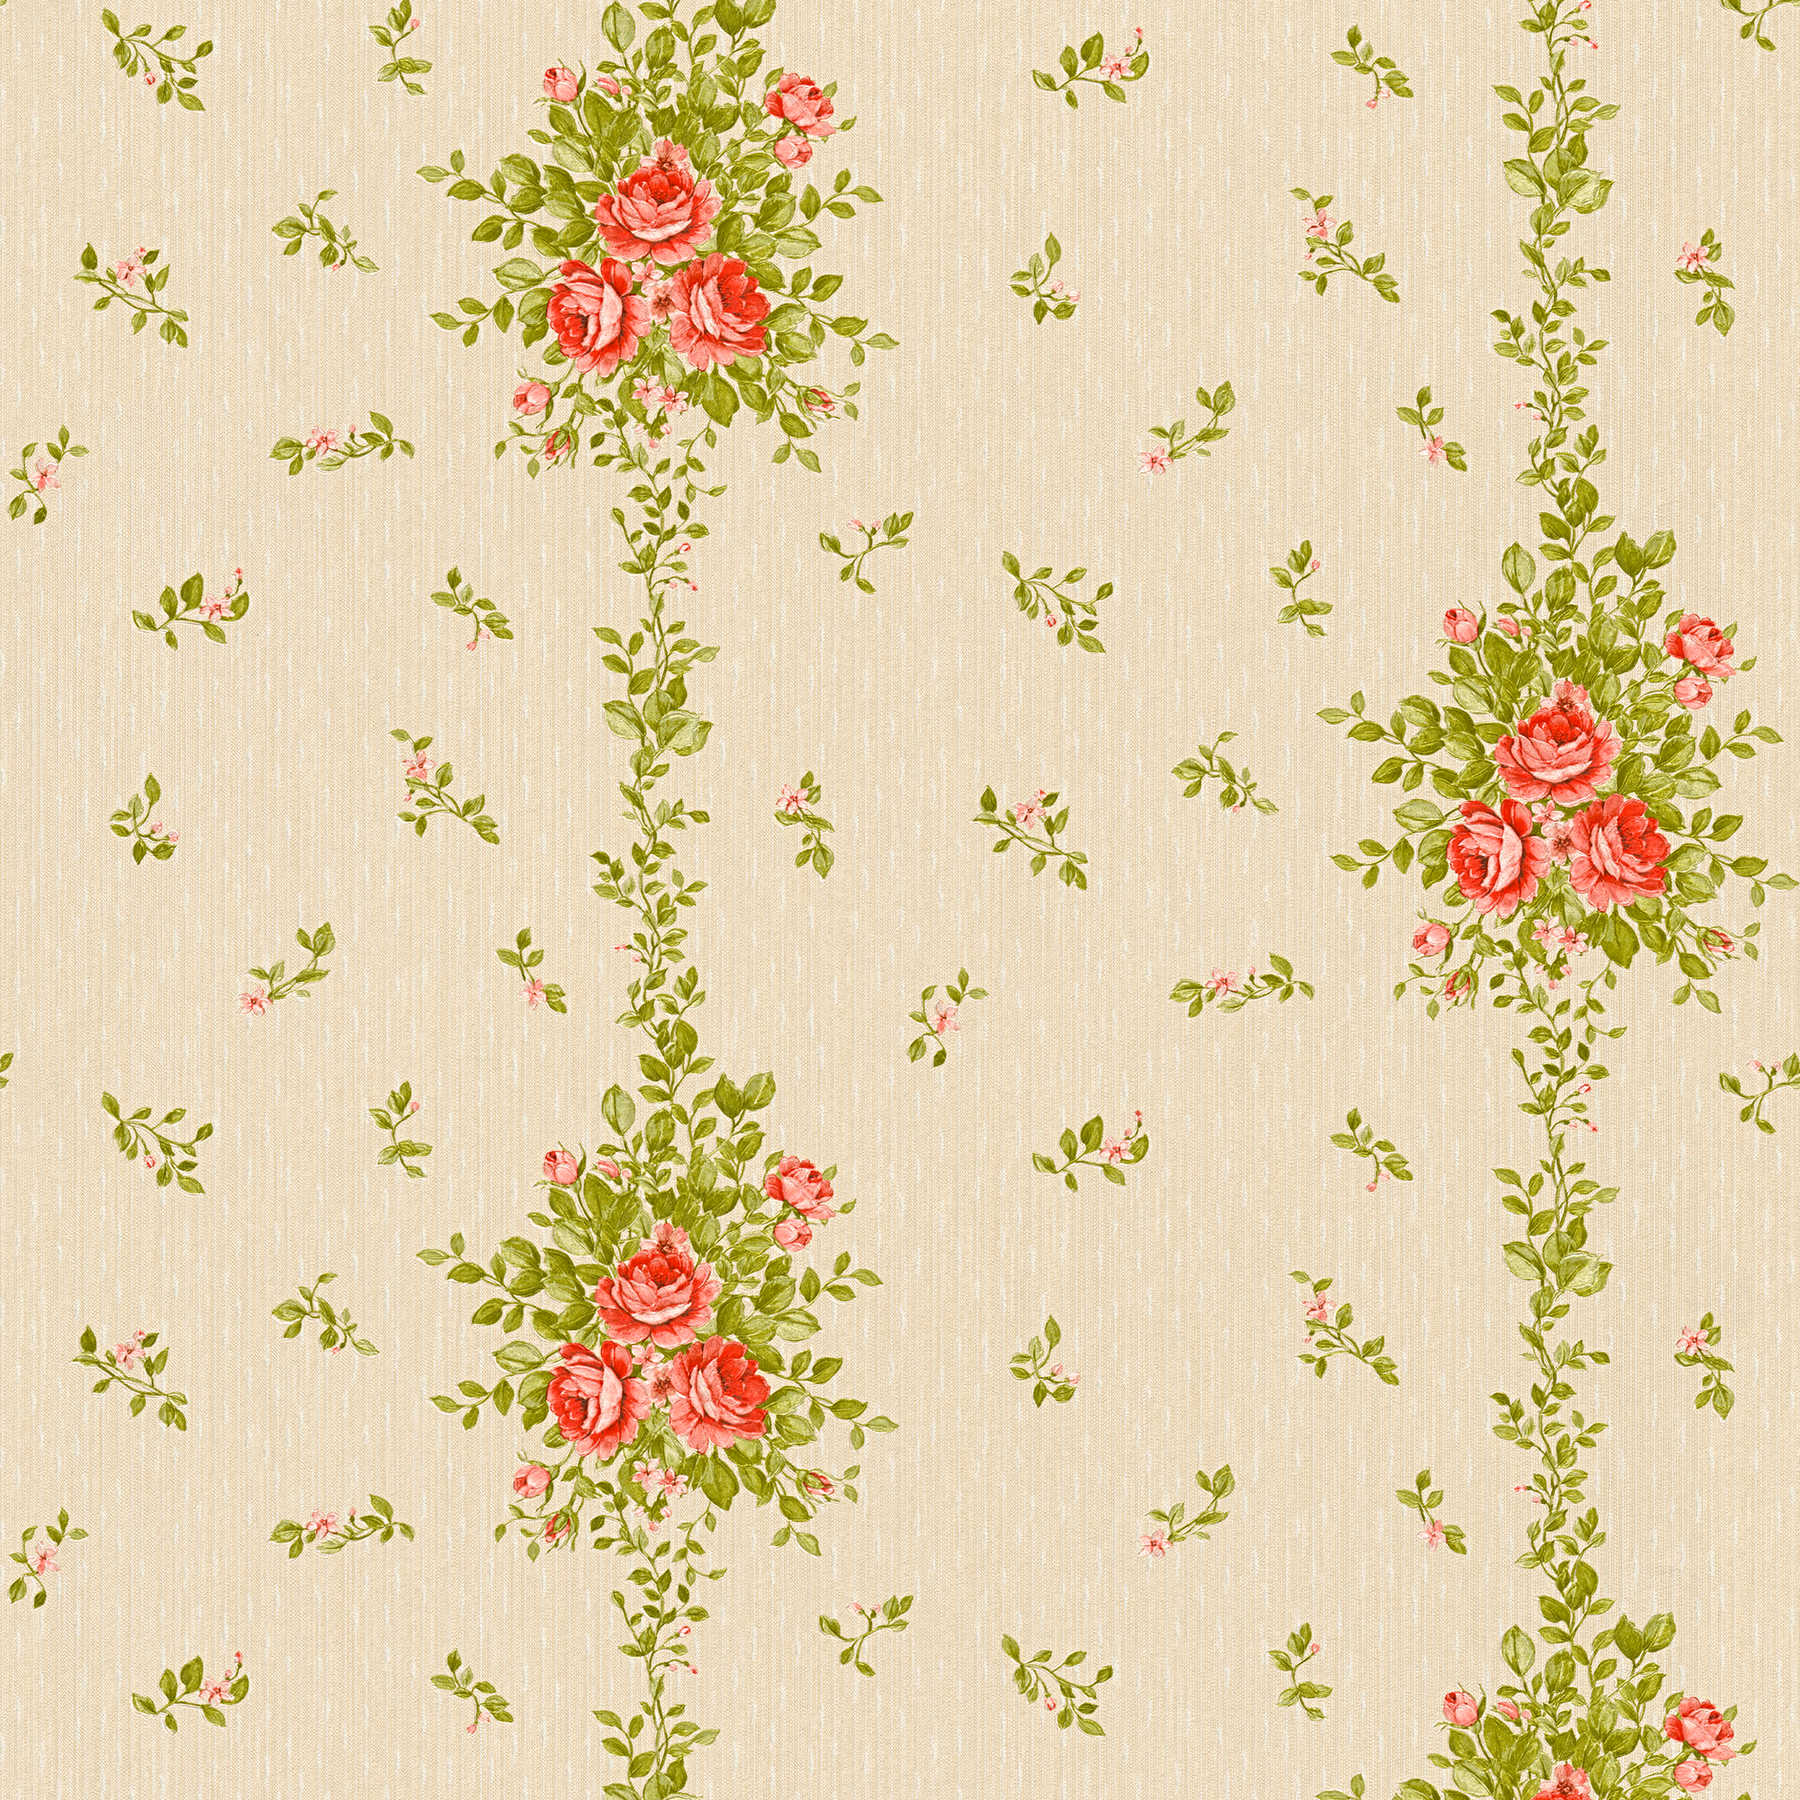 Blumentapete Rosen Muster & Streifen-Effekt – Beige
